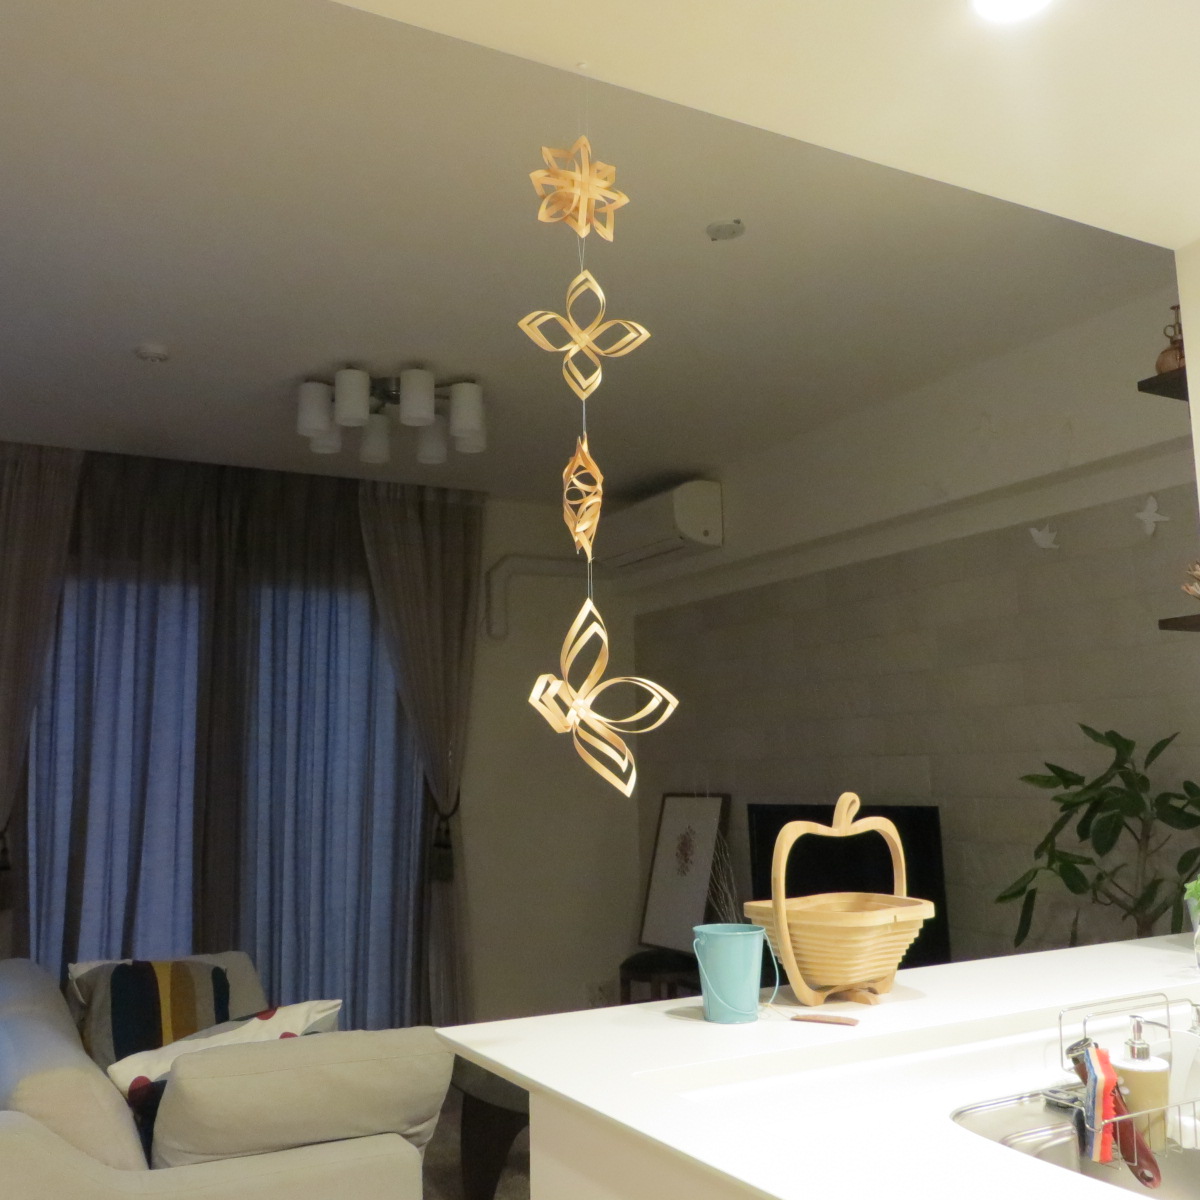 「きおび」のオーナメントを天井から吊るす 66平米のマンション暮らしを快適に過ごす為に 楽天ブログ